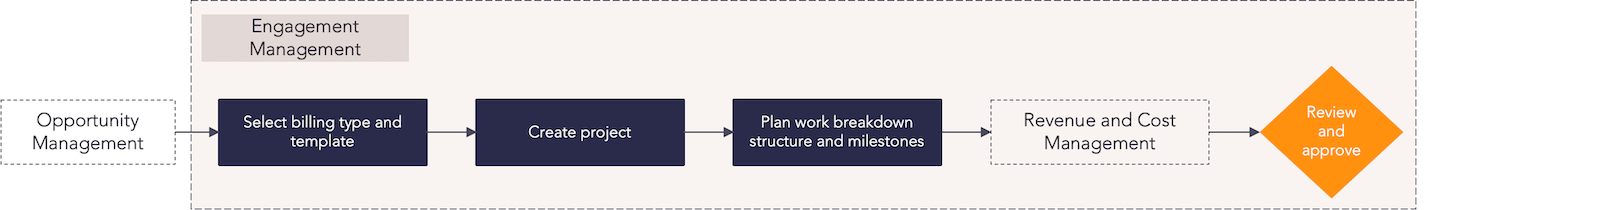 AW - Services Portfolio Planning - Engagement Management process flow.png